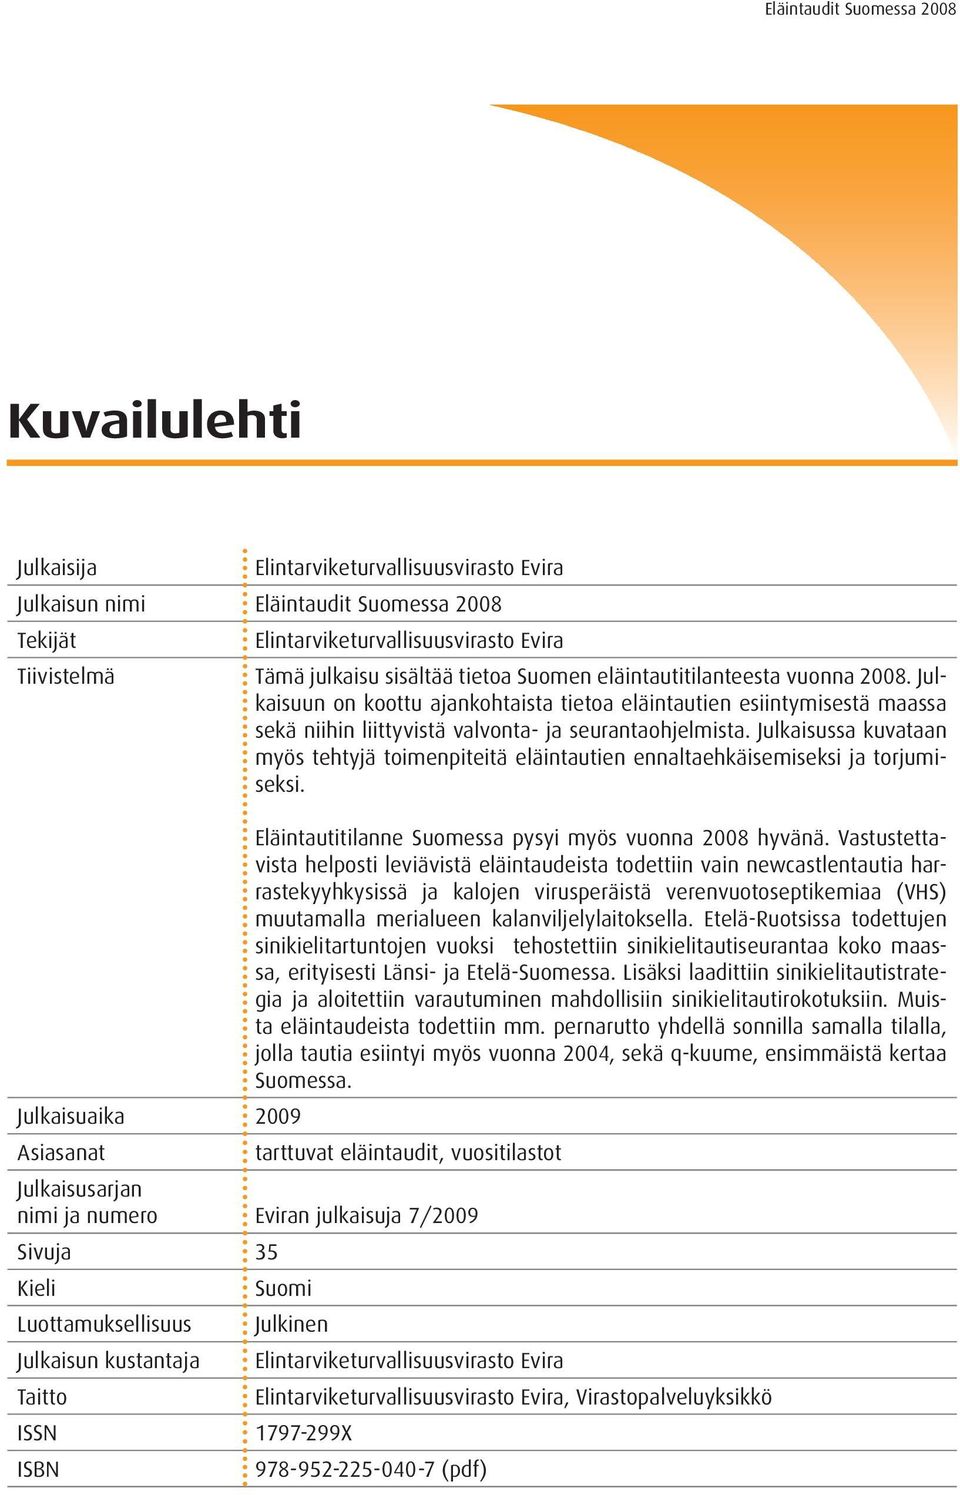 Julkaisussa kuvataan myös tehtyjä toimenpiteitä eläintautien ennaltaehkäisemiseksi ja torjumiseksi. Eläintautitilanne Suomessa pysyi myös vuonna 2008 hyvänä.